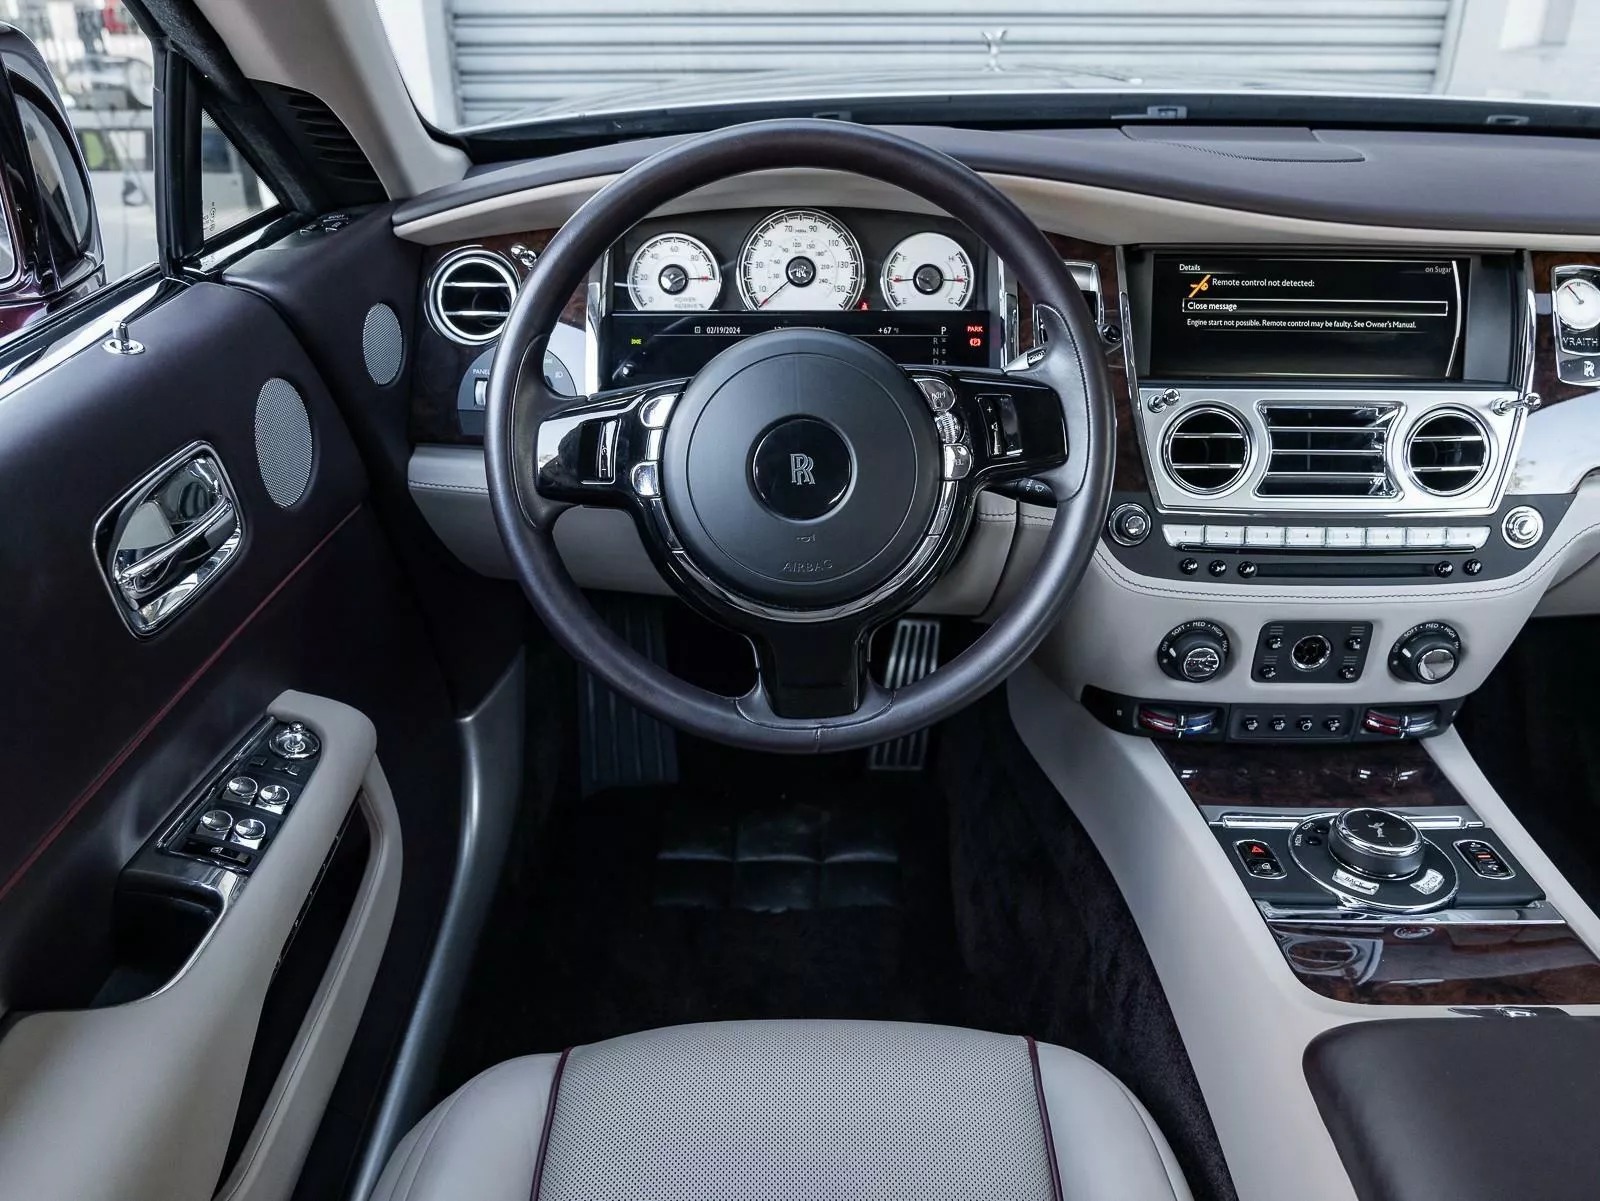 Rao bán Bugatti Chiron giá quy đổi hơn 95 tỷ đồng, chủ xe hứa tặng kèm Rolls-Royce Wraith hợp tông màu- Ảnh 10.